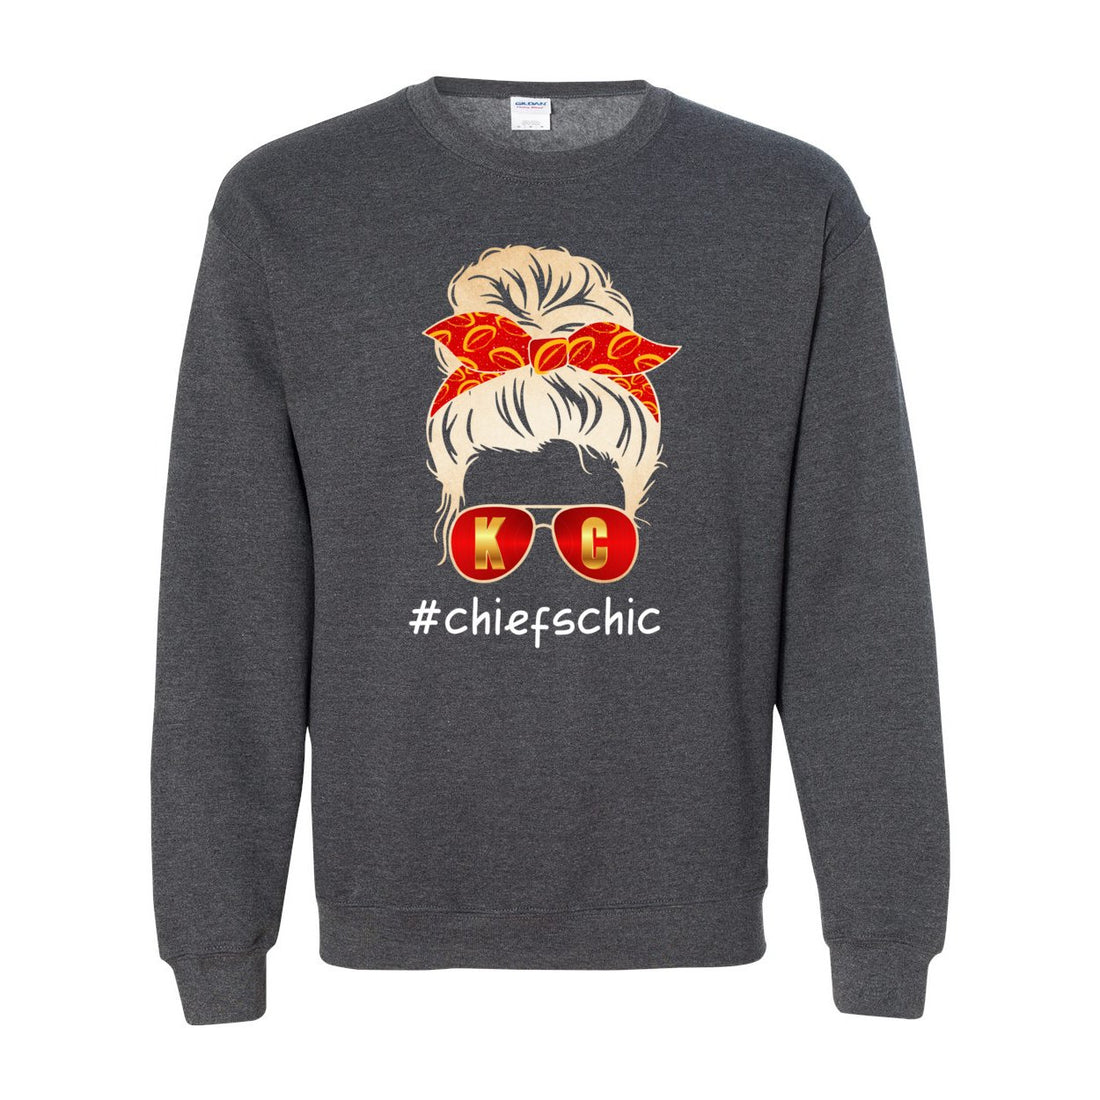 #CHIEFSCHIC Opt 2 Crewneck Sweatshirt - Sweaters/Hoodies - Positively Sassy - #CHIEFSCHIC Opt 2 Crewneck Sweatshirt